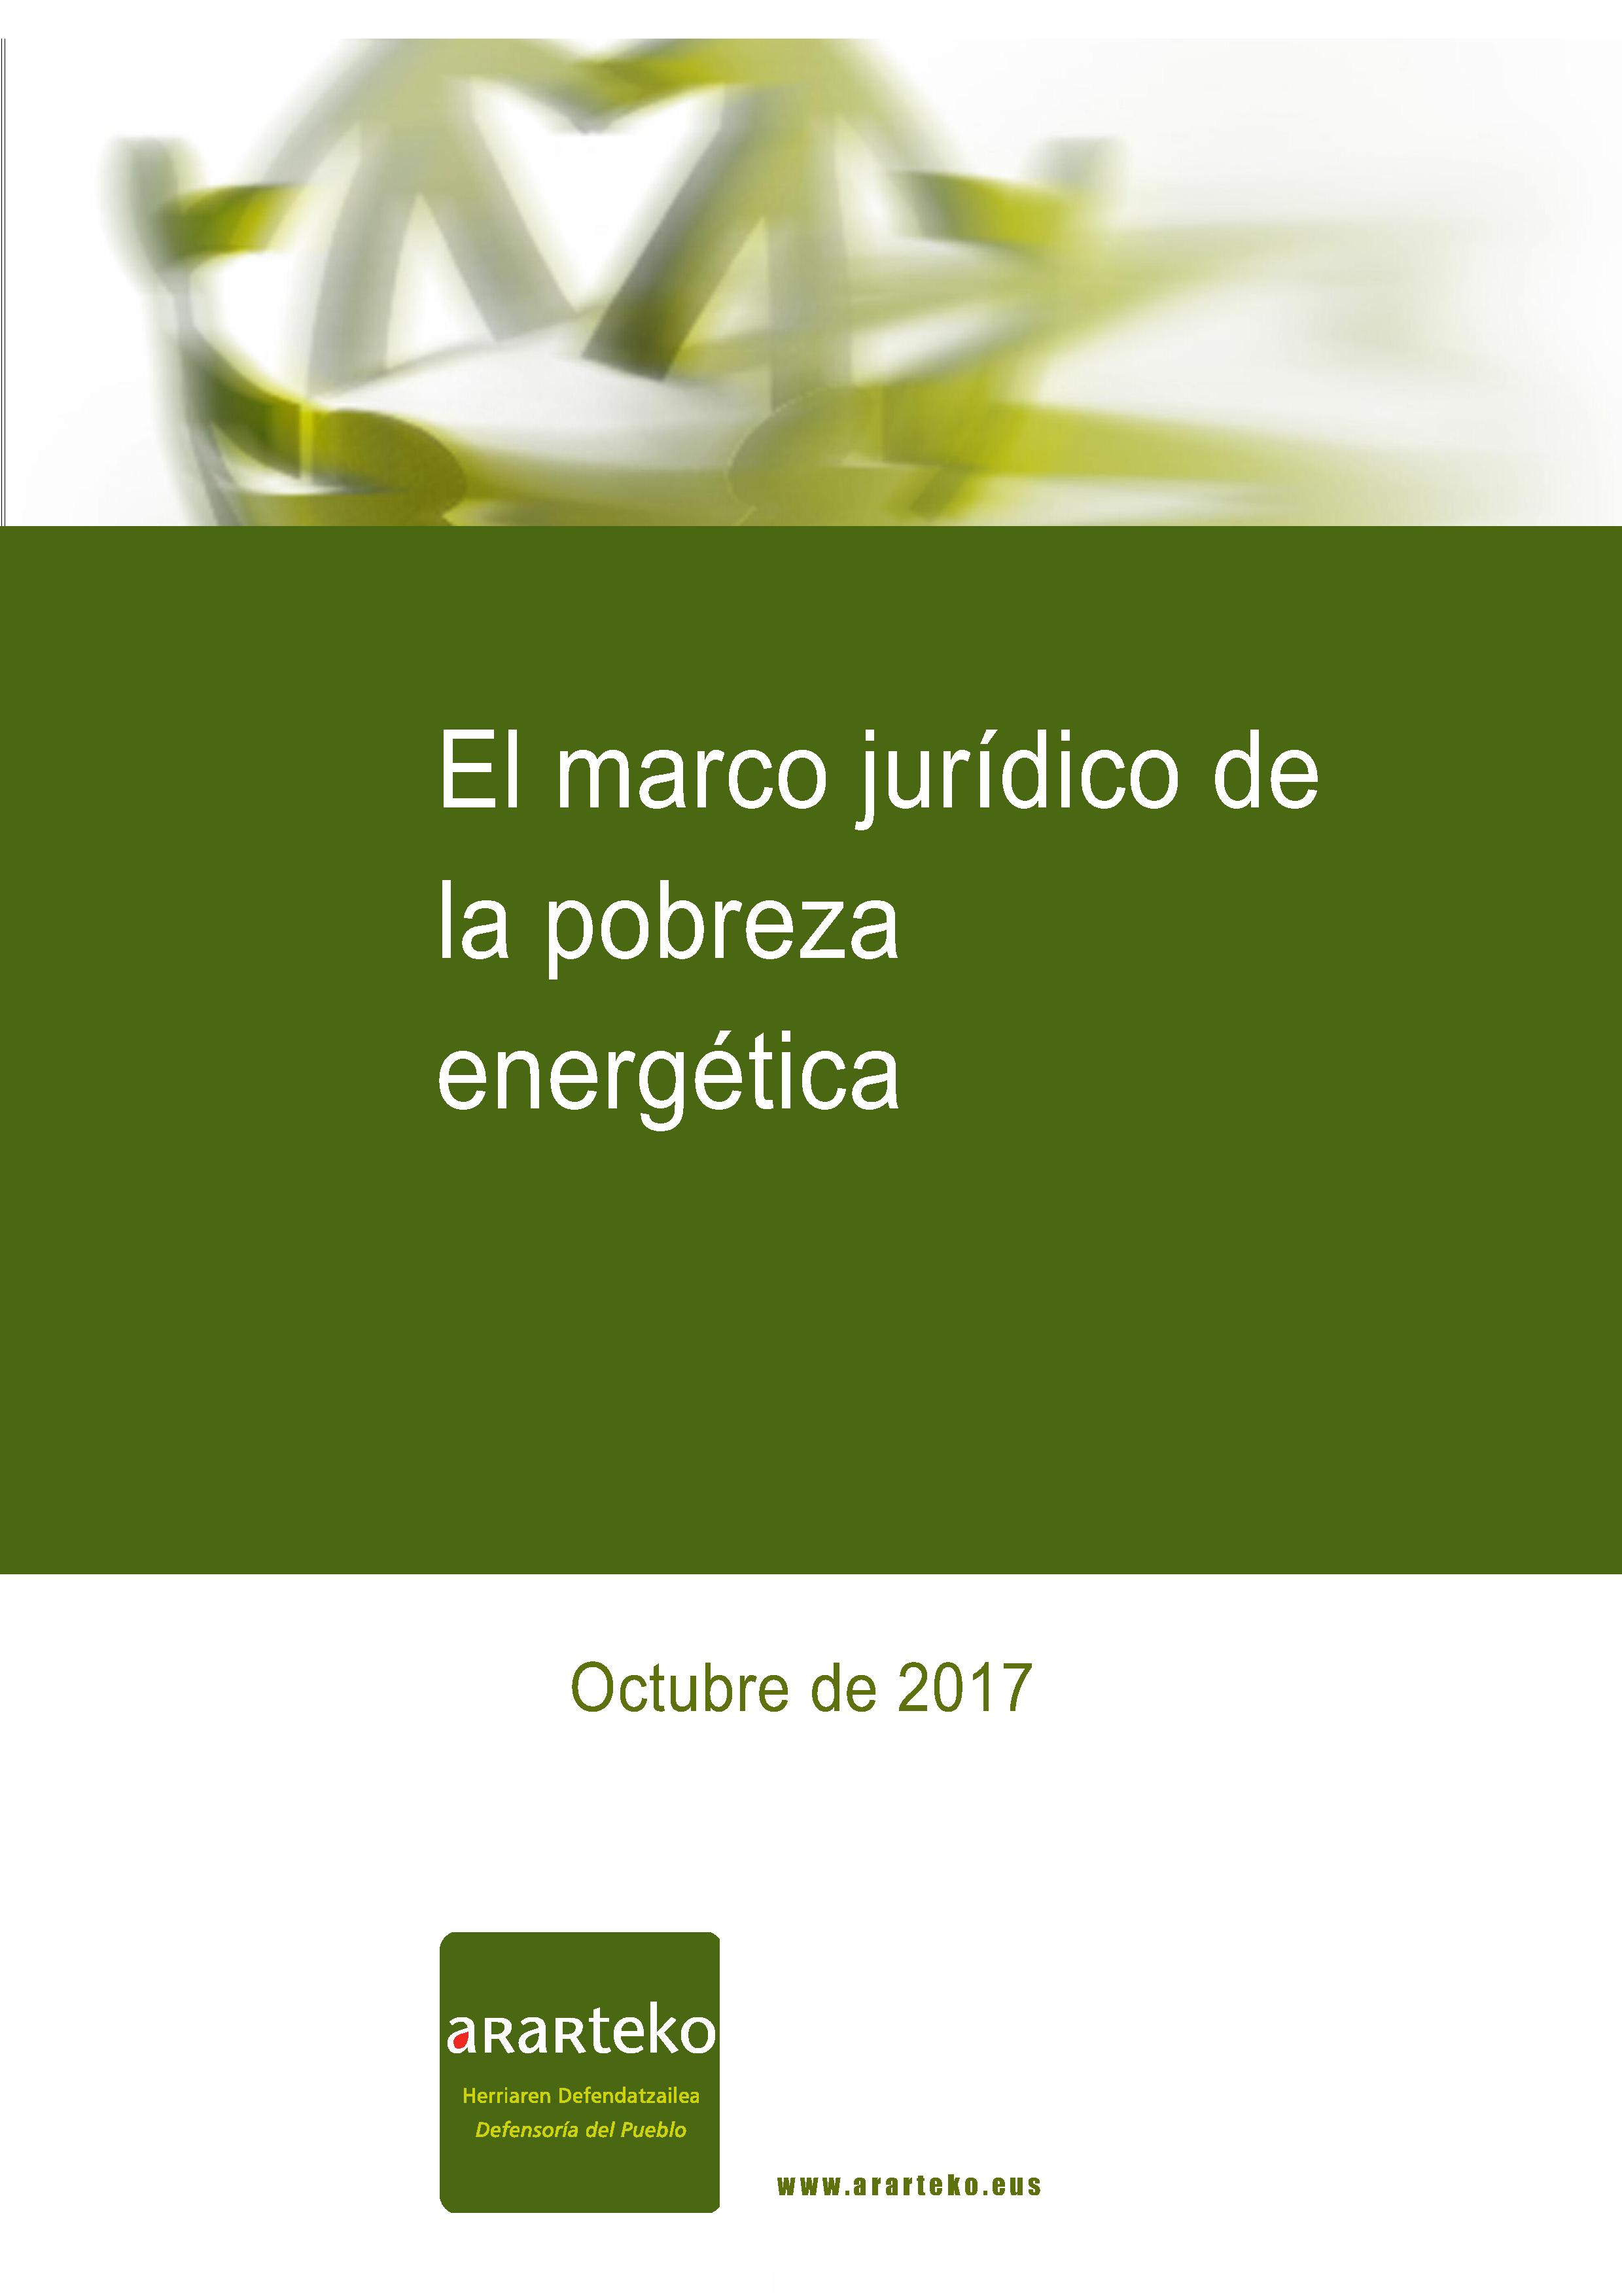 El marco jurídico de la pobreza energética